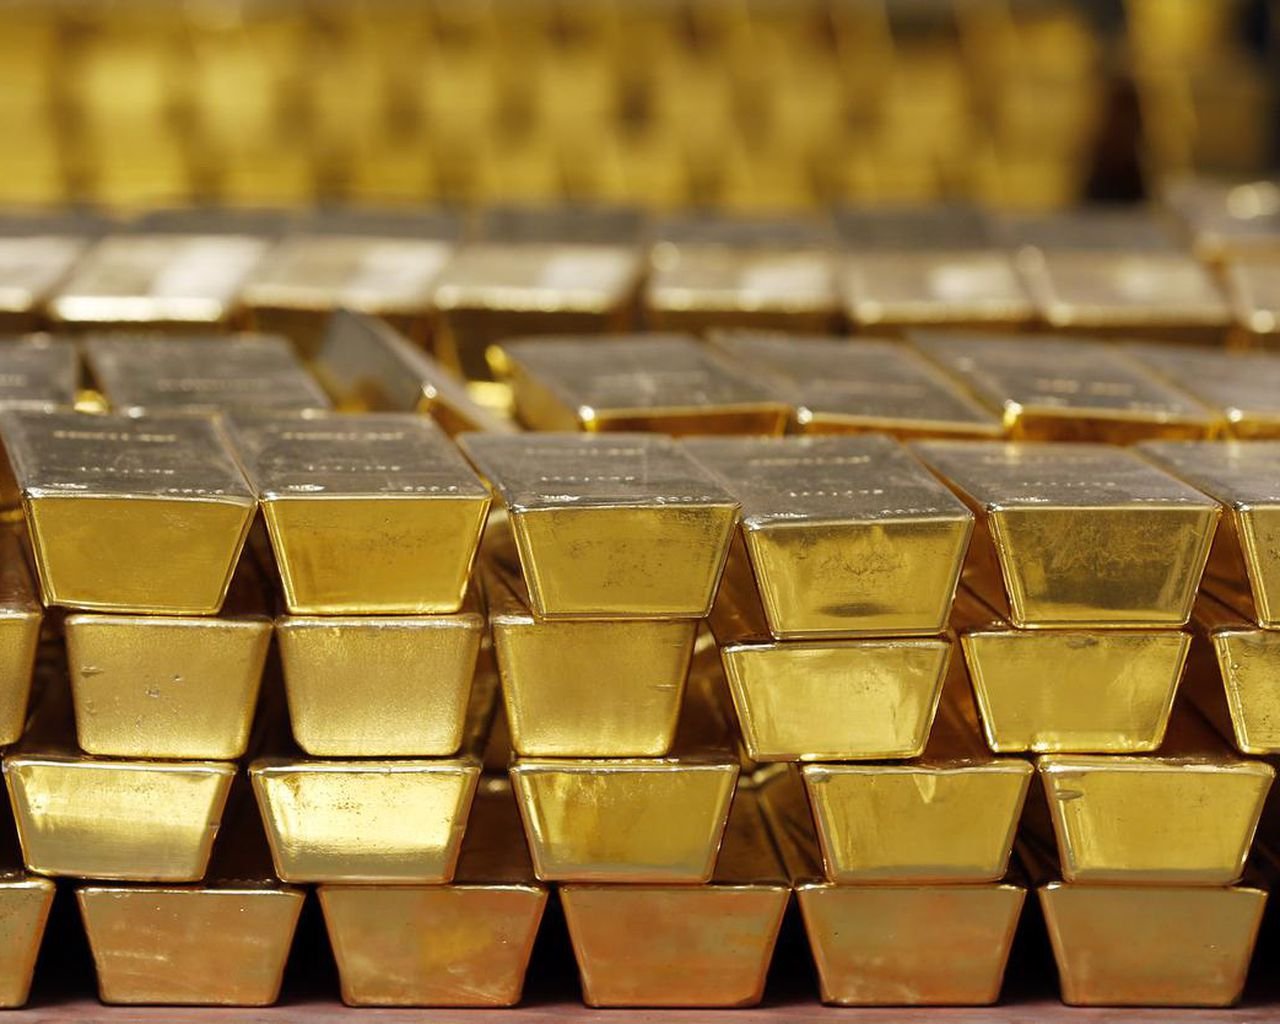  În Univers există ”prea mult aur”, iar fizicienii nu ştiu de unde provine metalul preţios